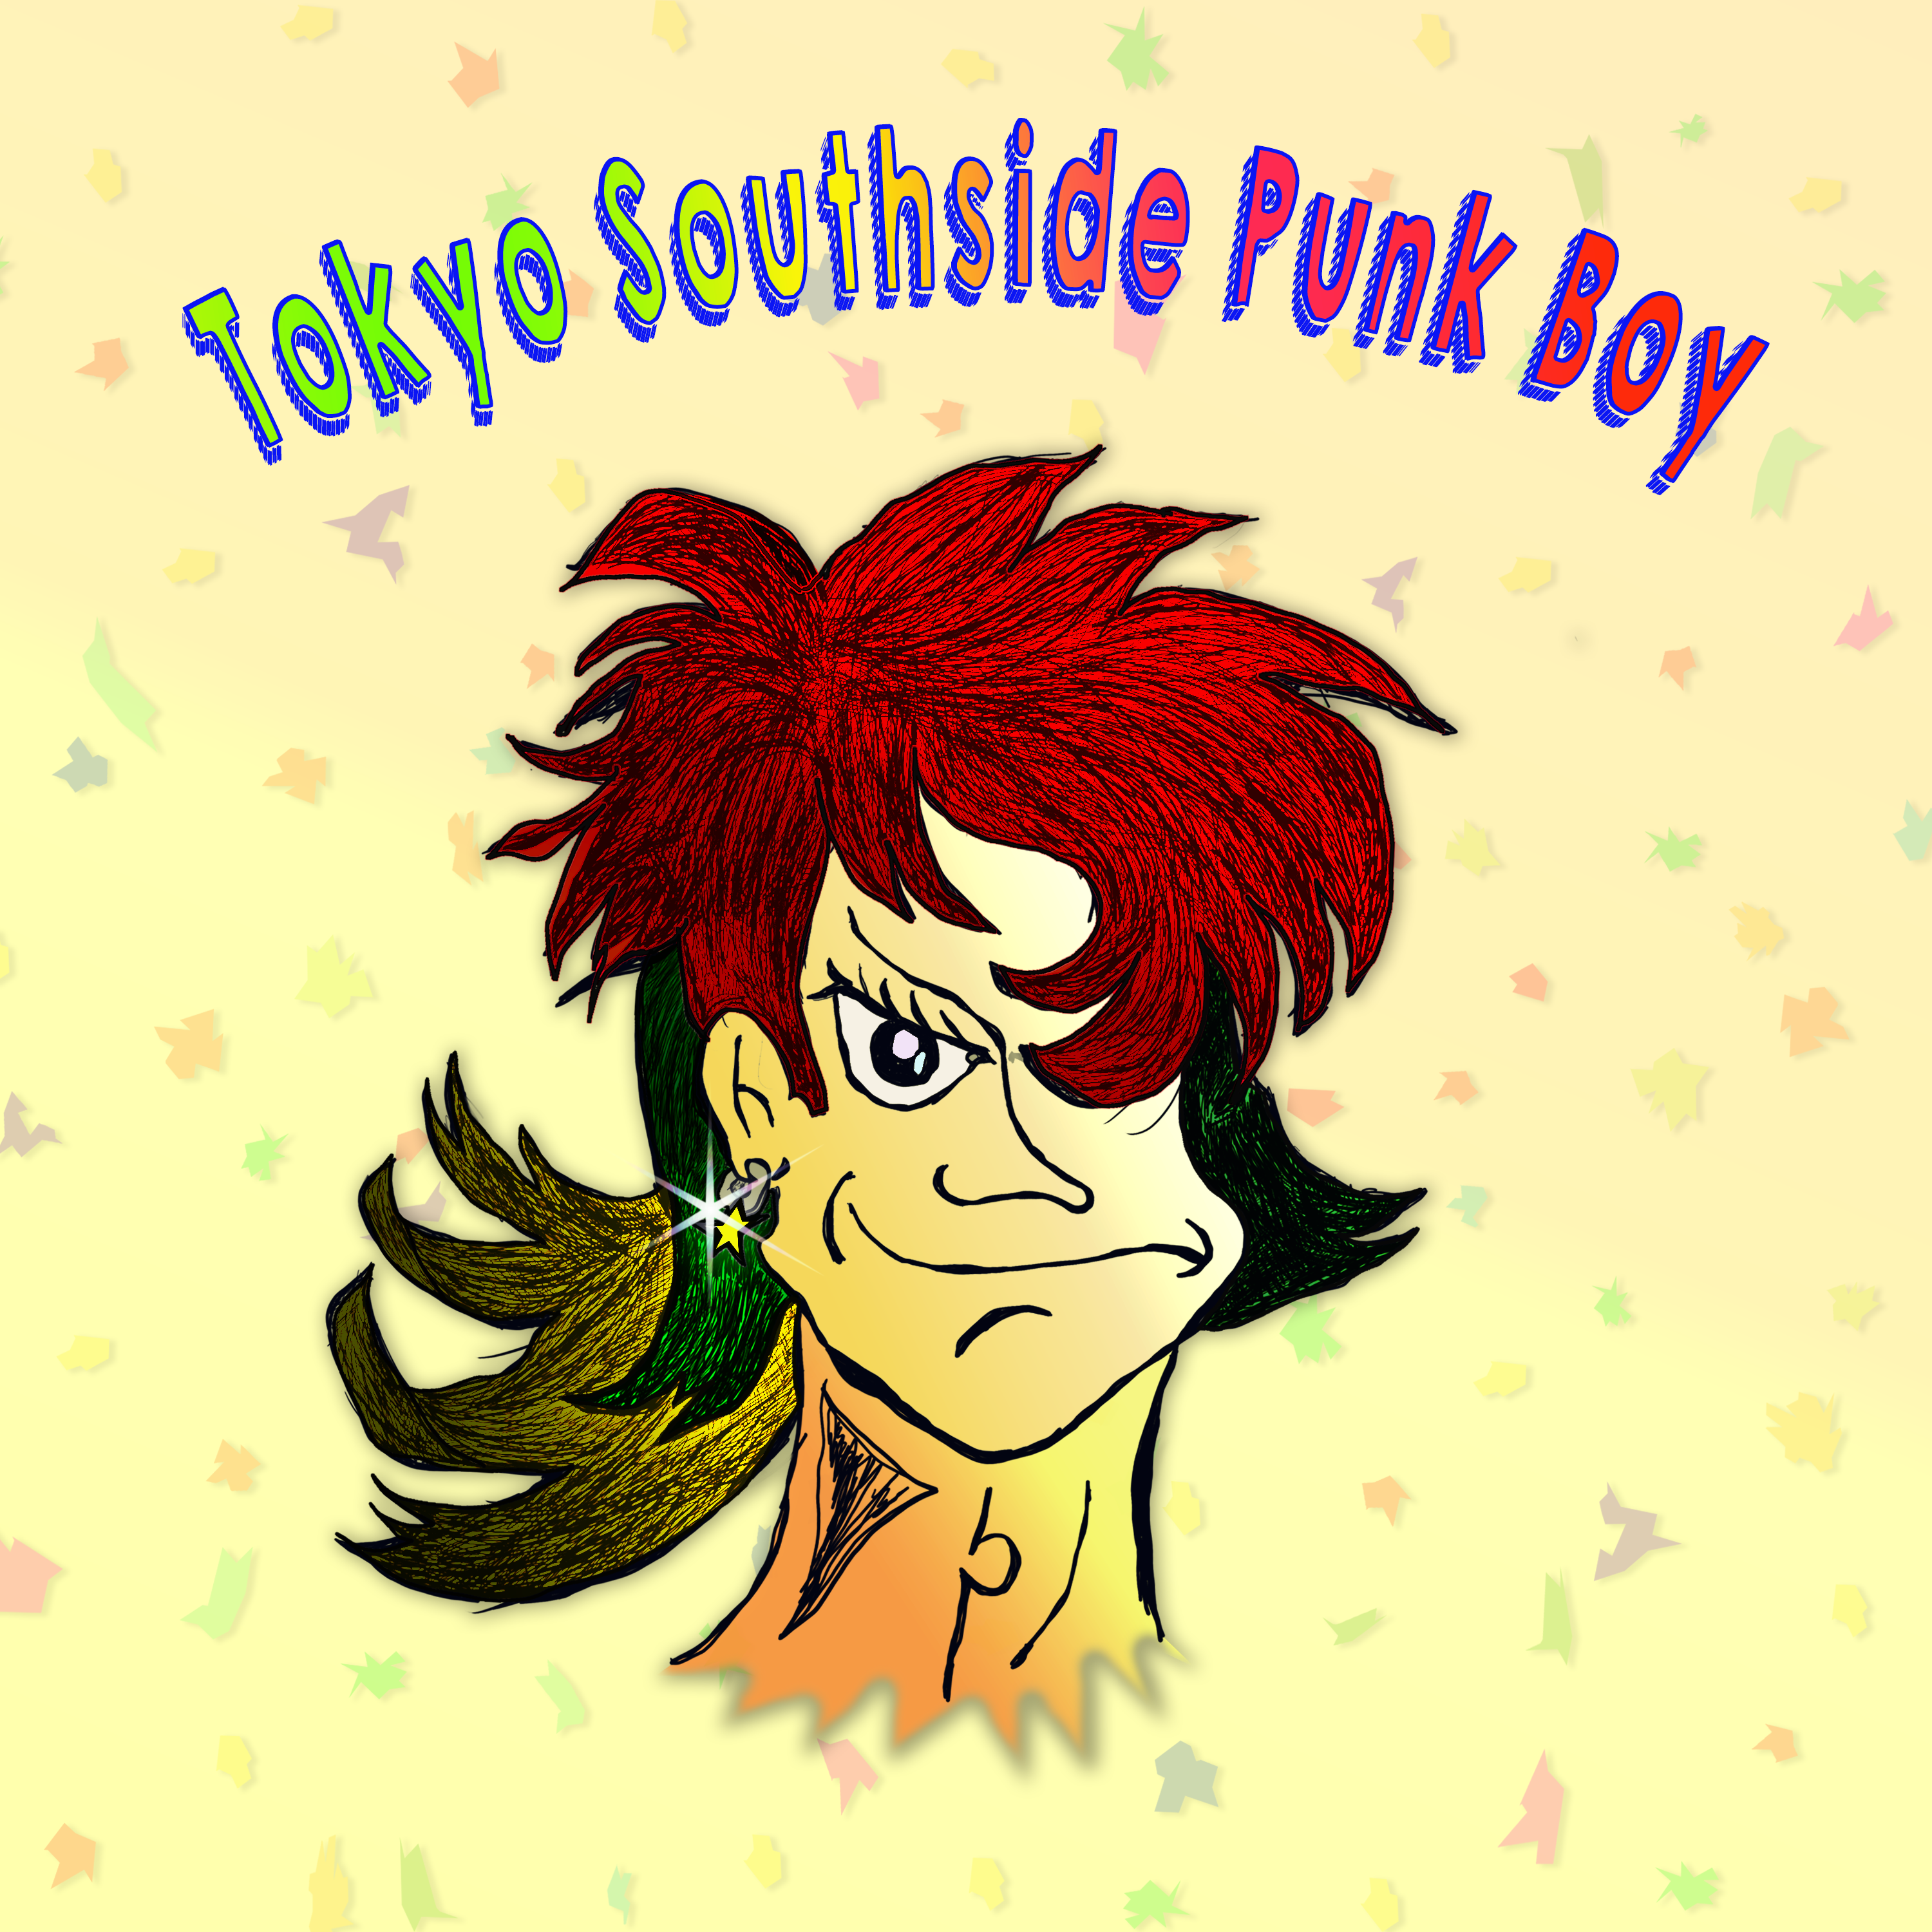 Tokyo Southside Punk Boy_#1